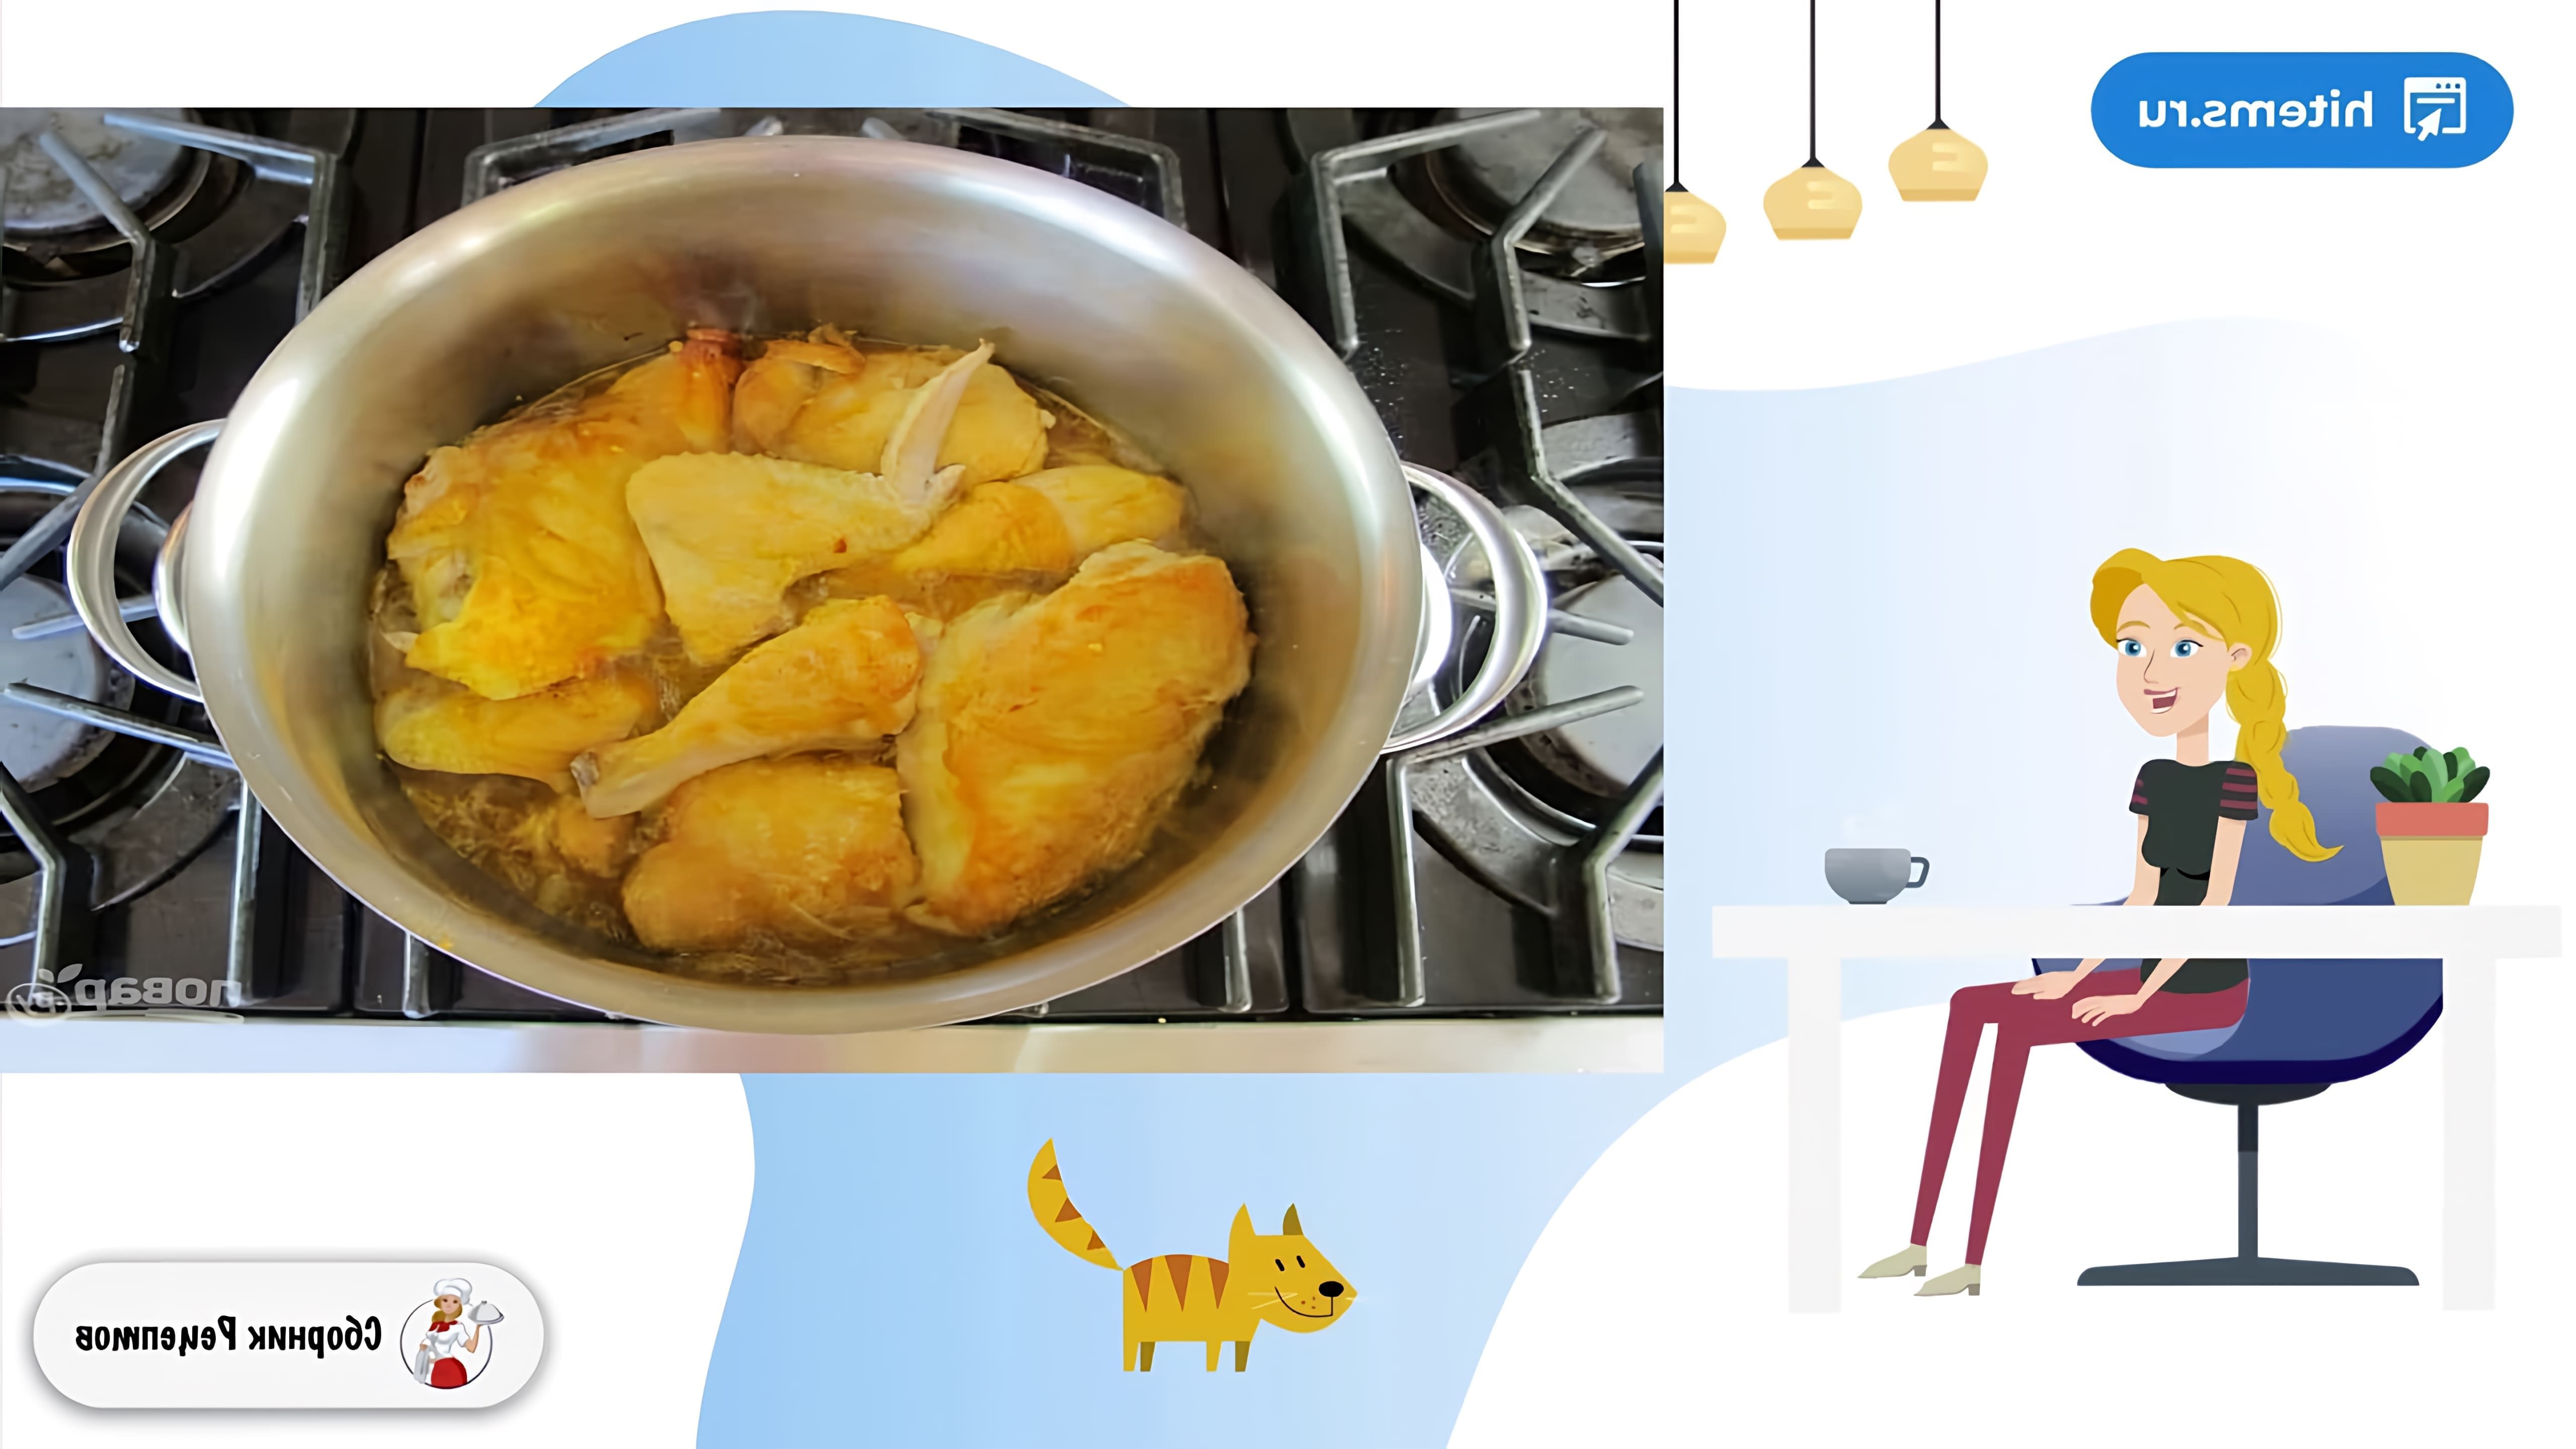 В этом видео демонстрируется рецепт приготовления курицы с кускусом и овощами